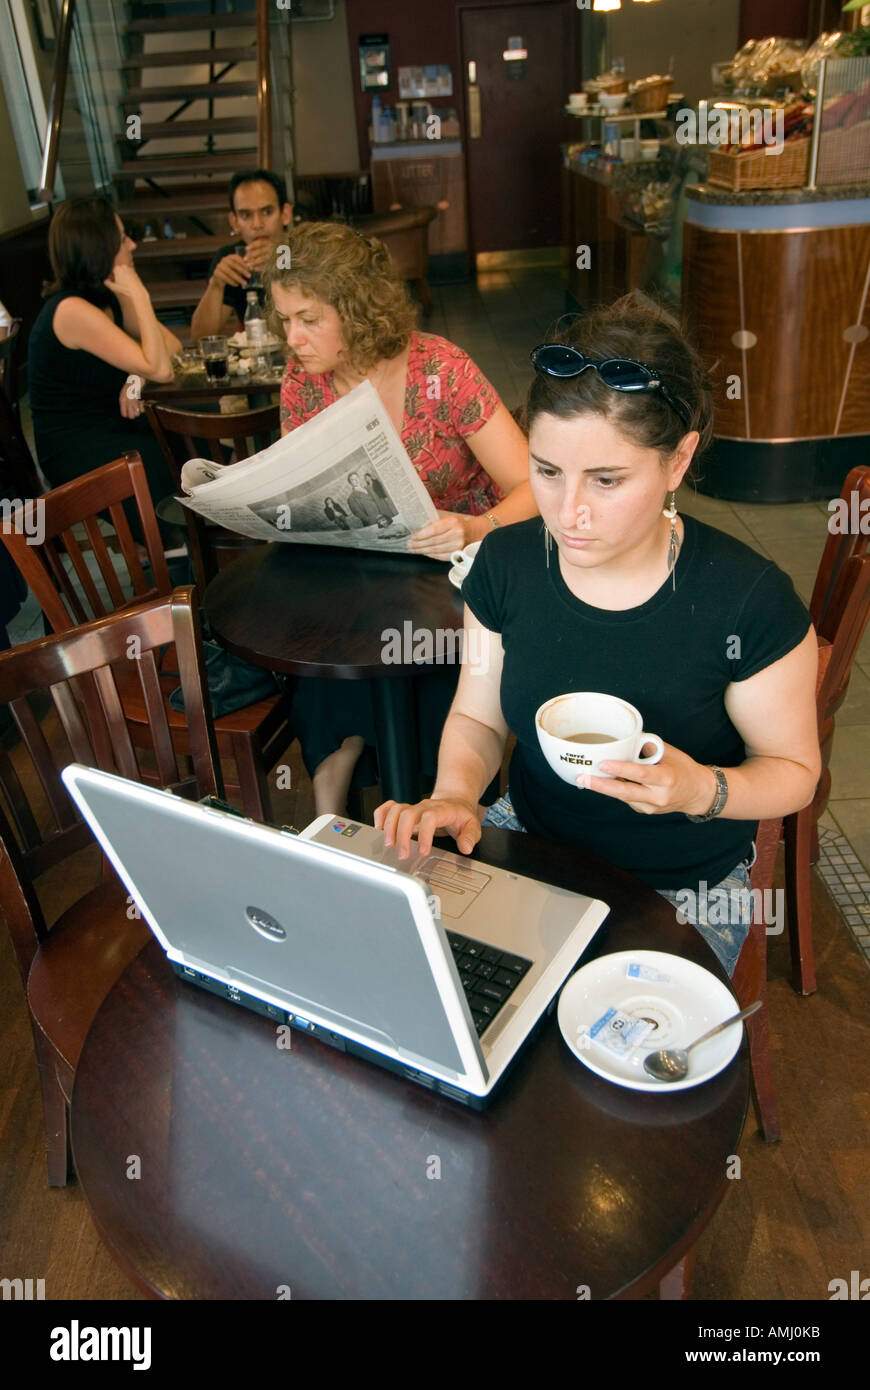 Junge Frau, die das Surfen im Internet auf einem Laptopcomputer in einem Caffe Nero, London, England, UK Stockfoto